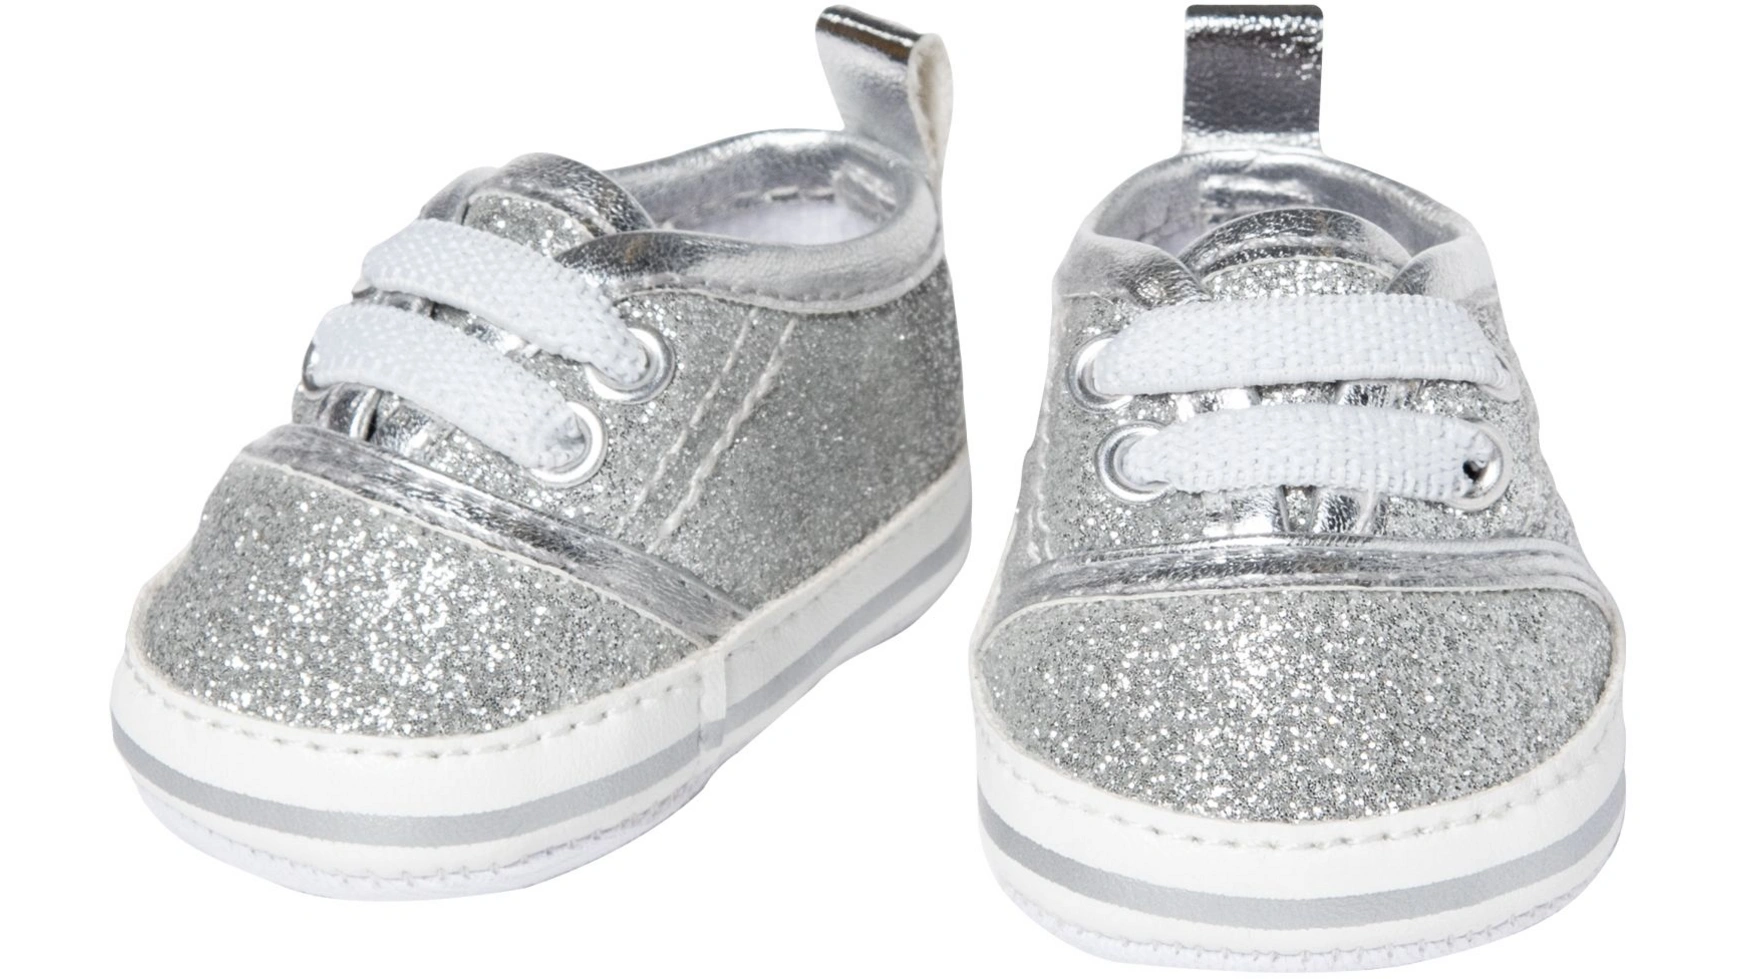 Кукольные кроссовки с блестками, серебро, размер 30-34см Heless